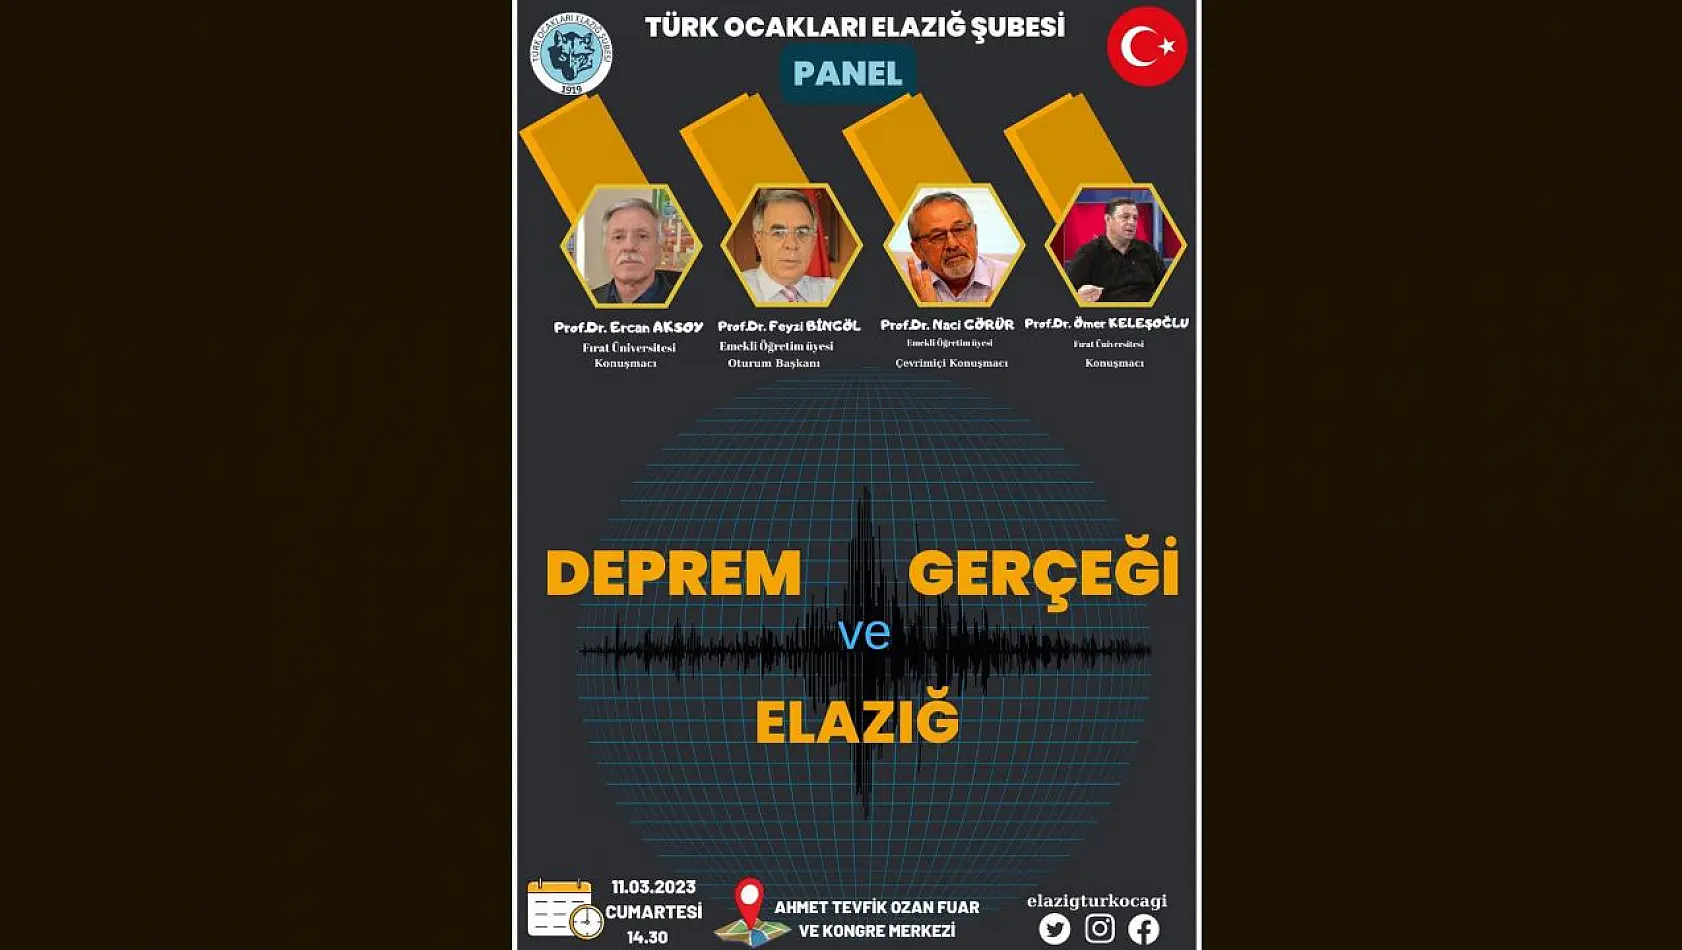 Elazığ'da 'Deprem Gerçeği ve Elazığ' Paneli Düzenlenecek